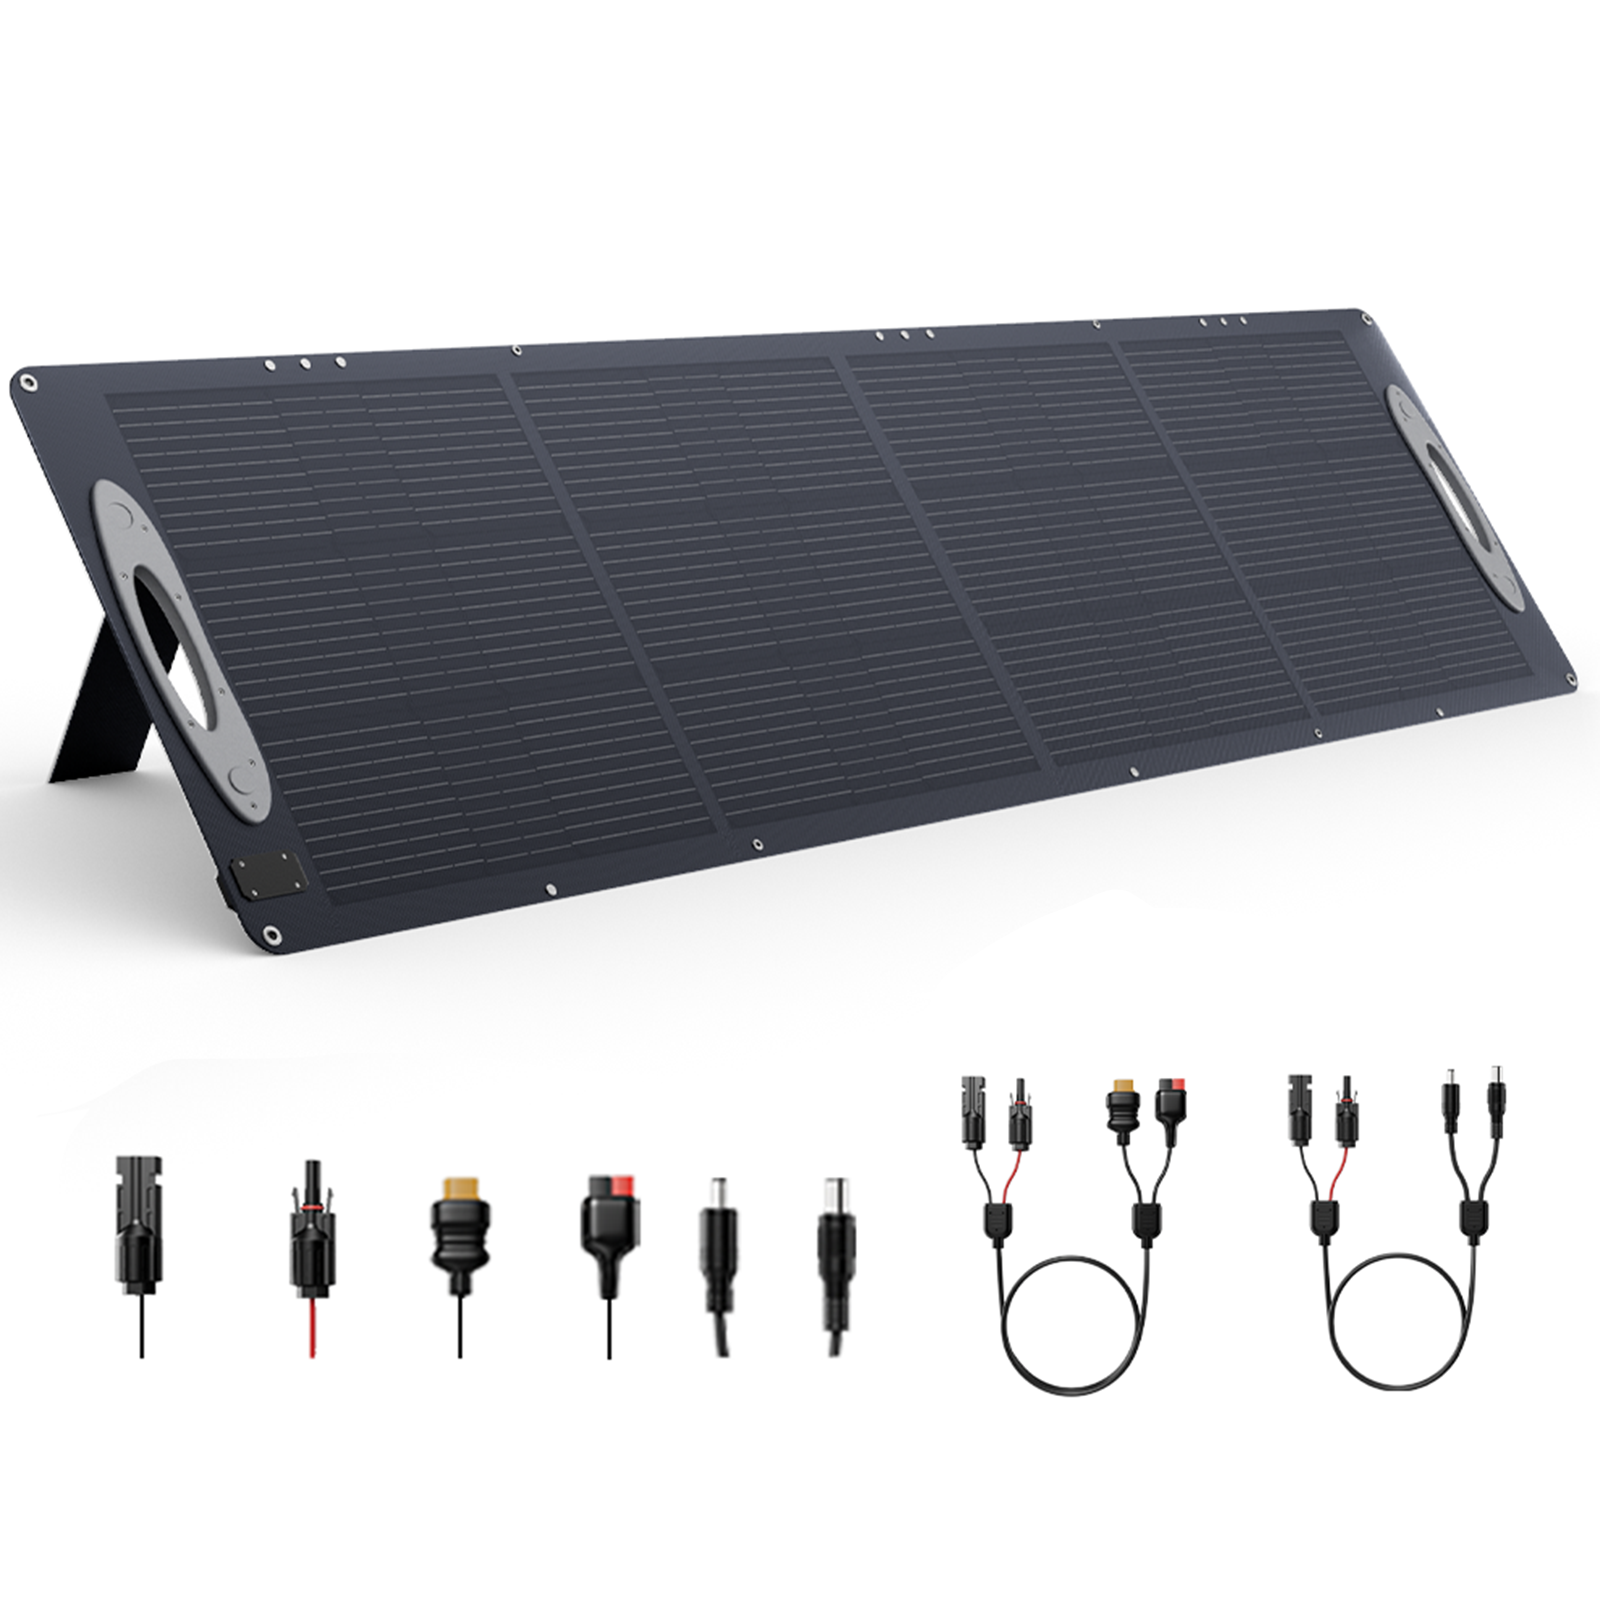 [EU Direct] VDL SC0201 Pannello solare ETFE da 200W 5V USB 20V DC Pannelli solari con efficienza del 23.5% Pannello solare portatile pieghevole per patio, camper, campeggio all'aperto, emergenze con black-out